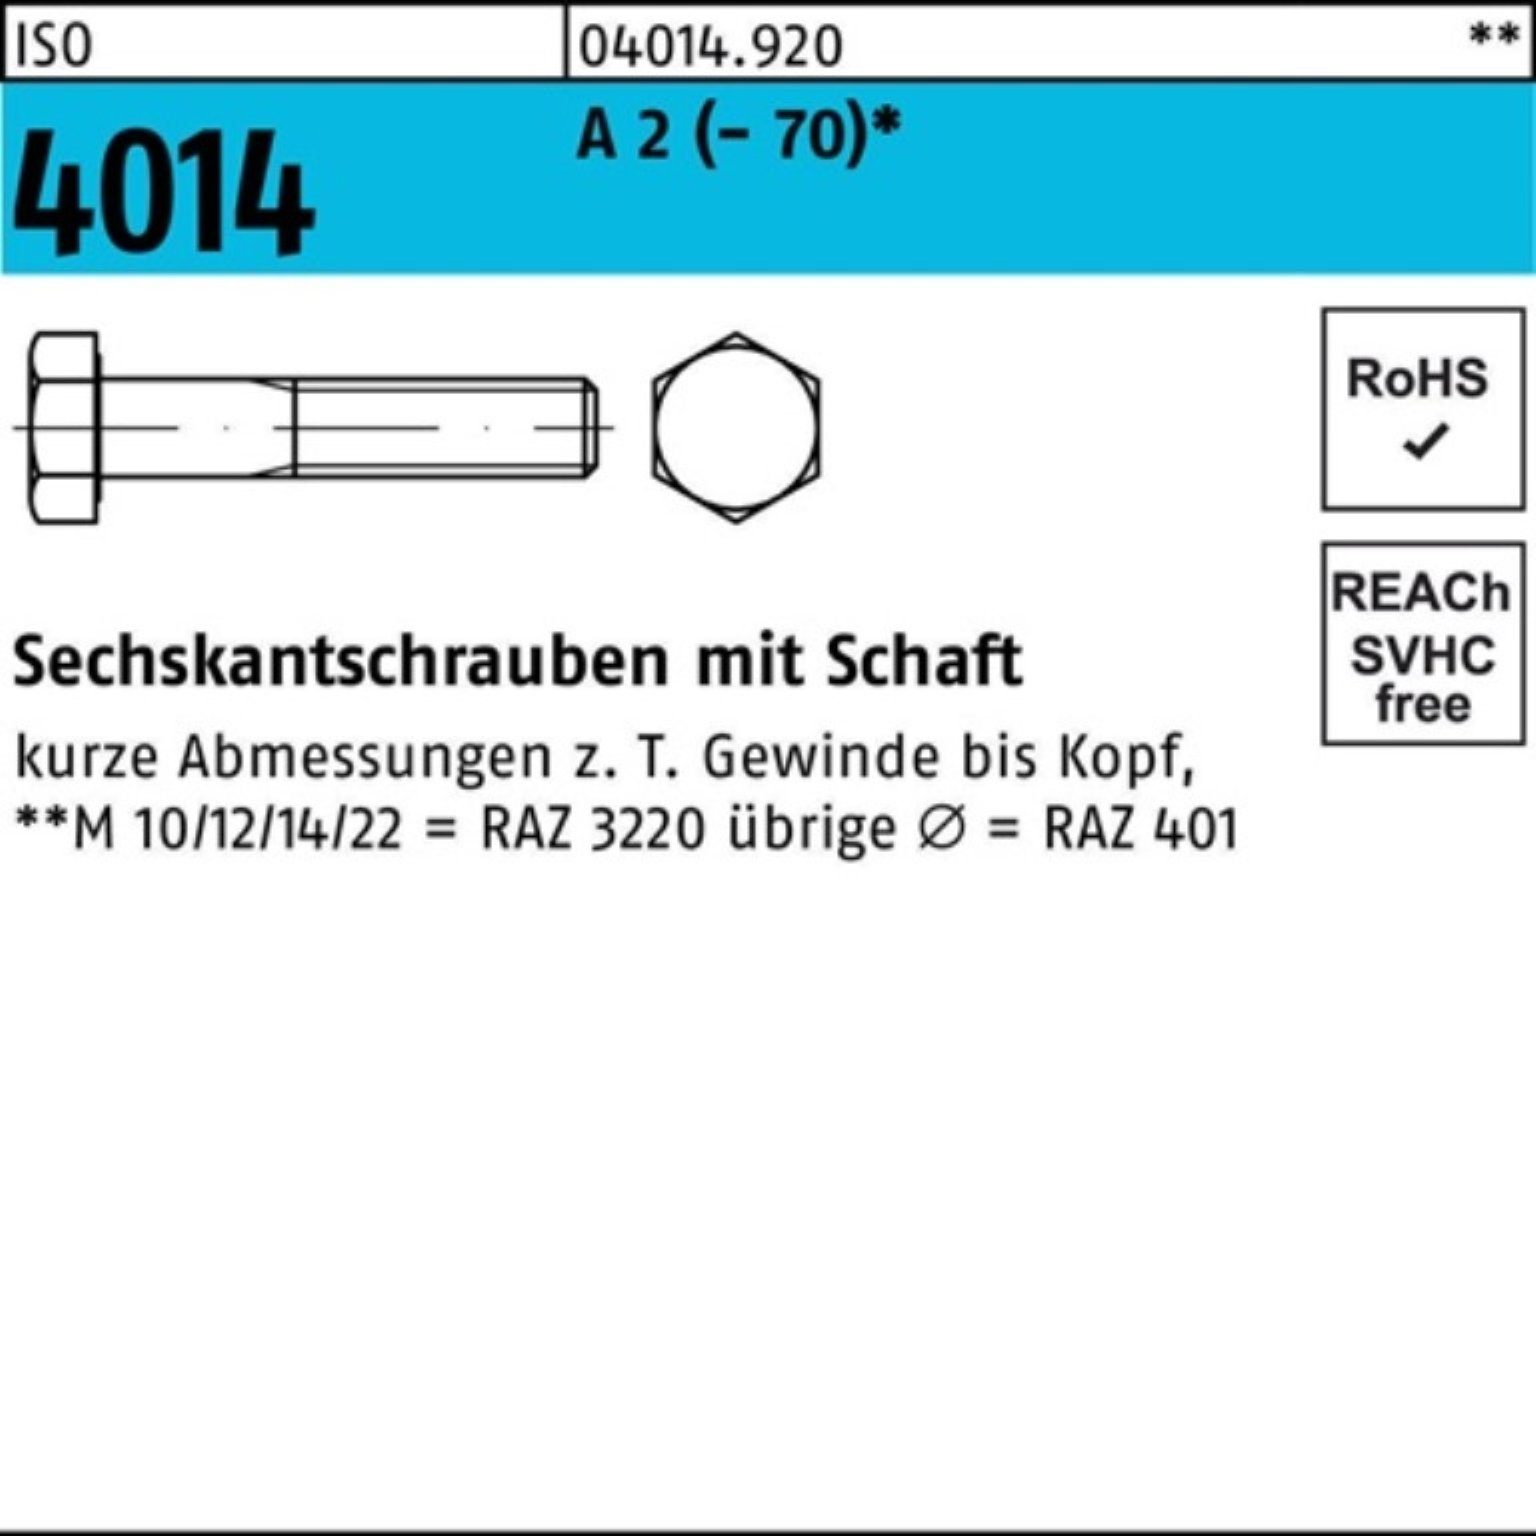 Bufab Sechskantschraube 100er Pack Sechskantschraube ISO 4014 Schaft M24x 160 A 2 (70) 1 St